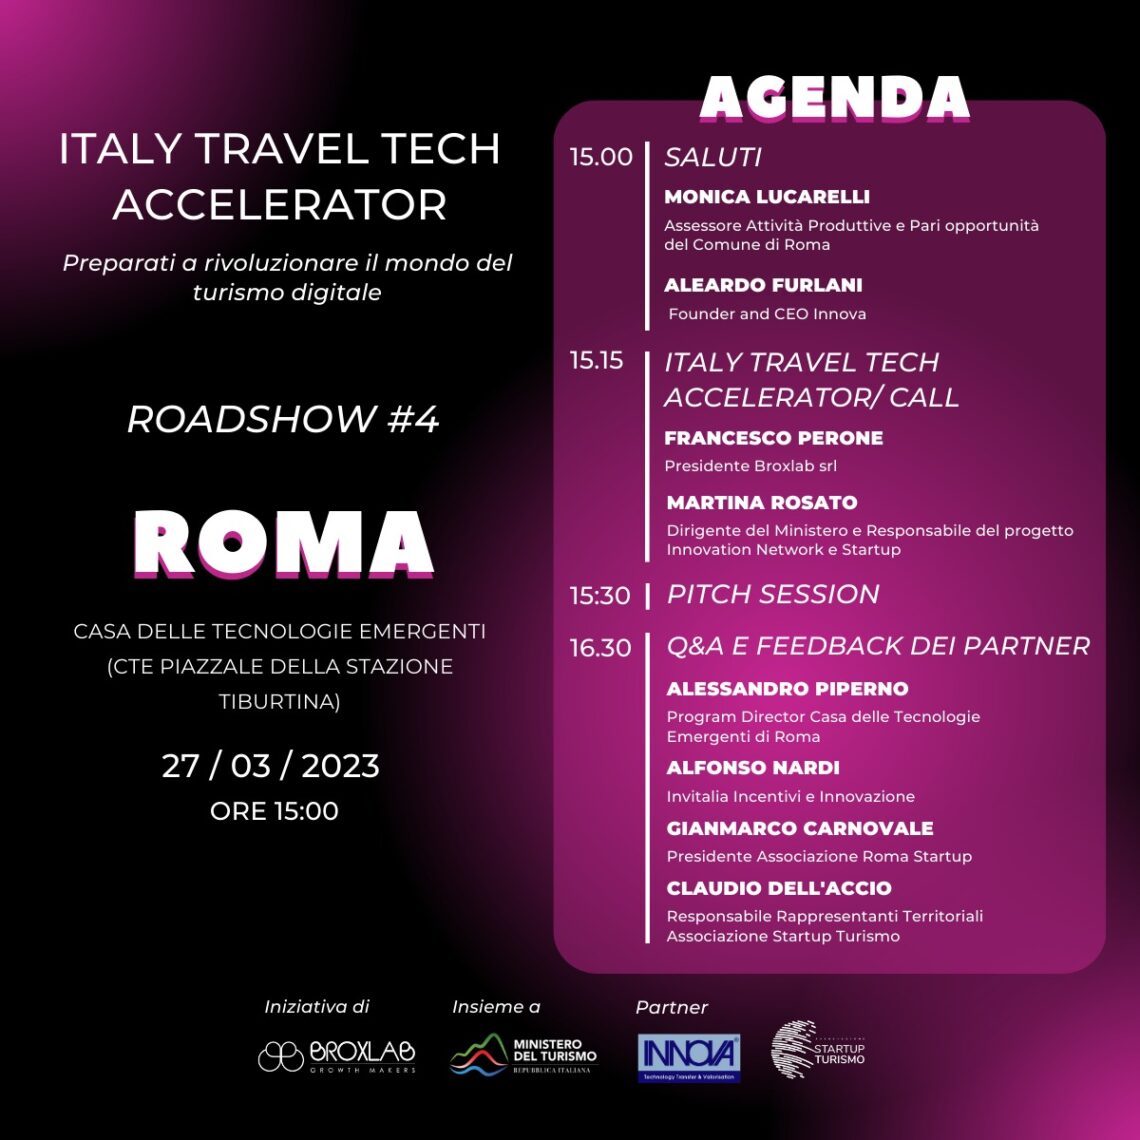 Innovazione, fa tappa a Roma il roadshow di Italy Travel Tech Accelerator